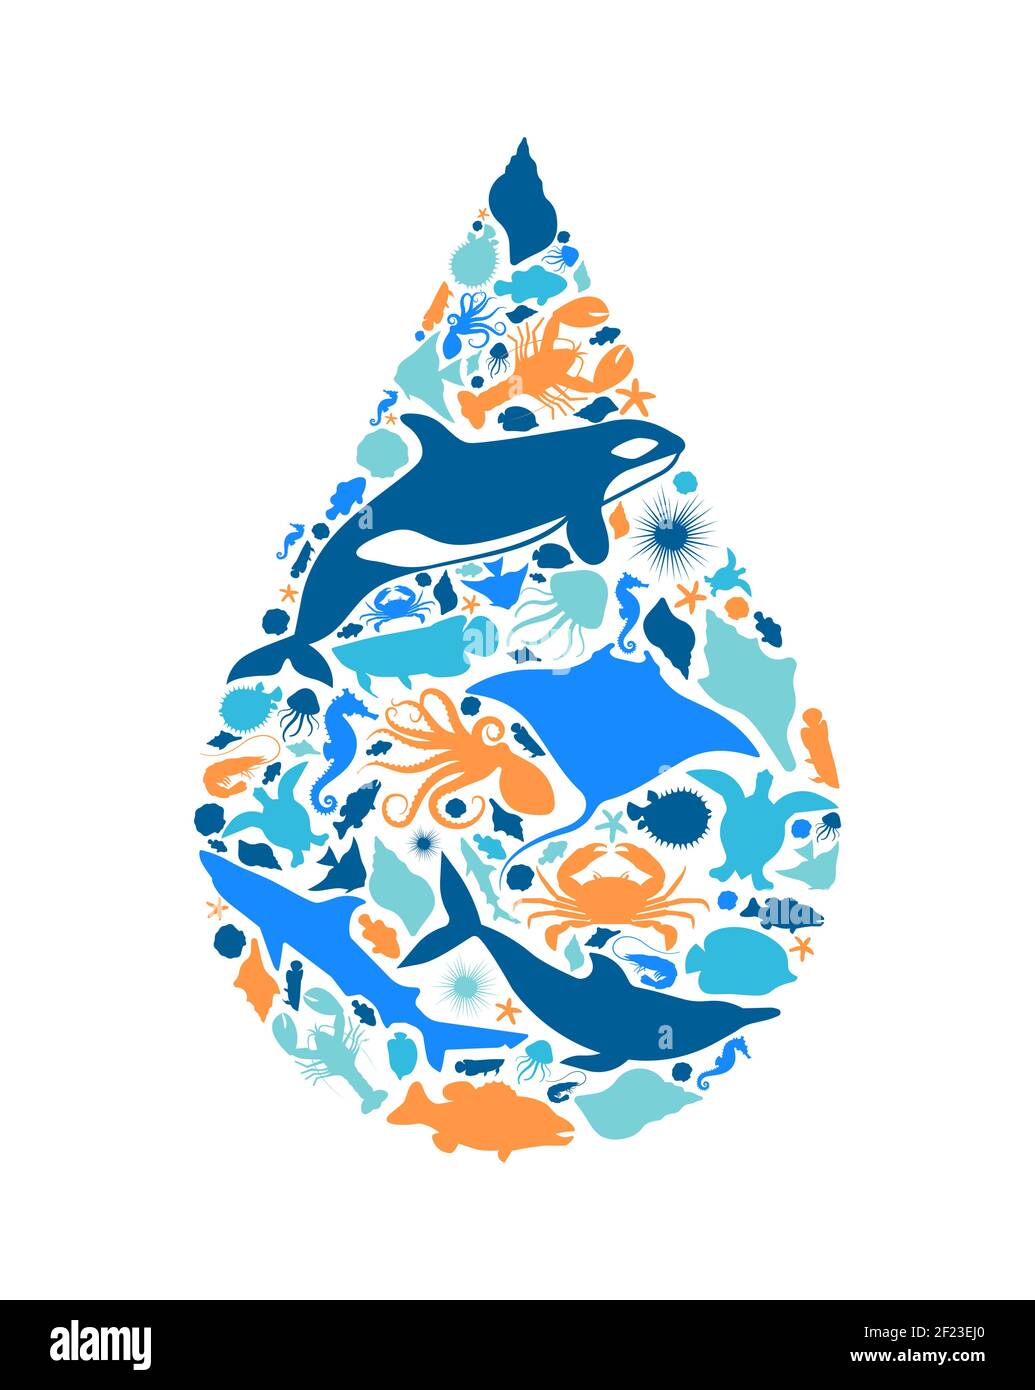 Diversas formas de animales marinos que forman la gota de agua sobre un fondo blanco aislado. Ilustración de la silueta de los animales acuáticos planos. Acuario de peces o trop Ilustración del Vector